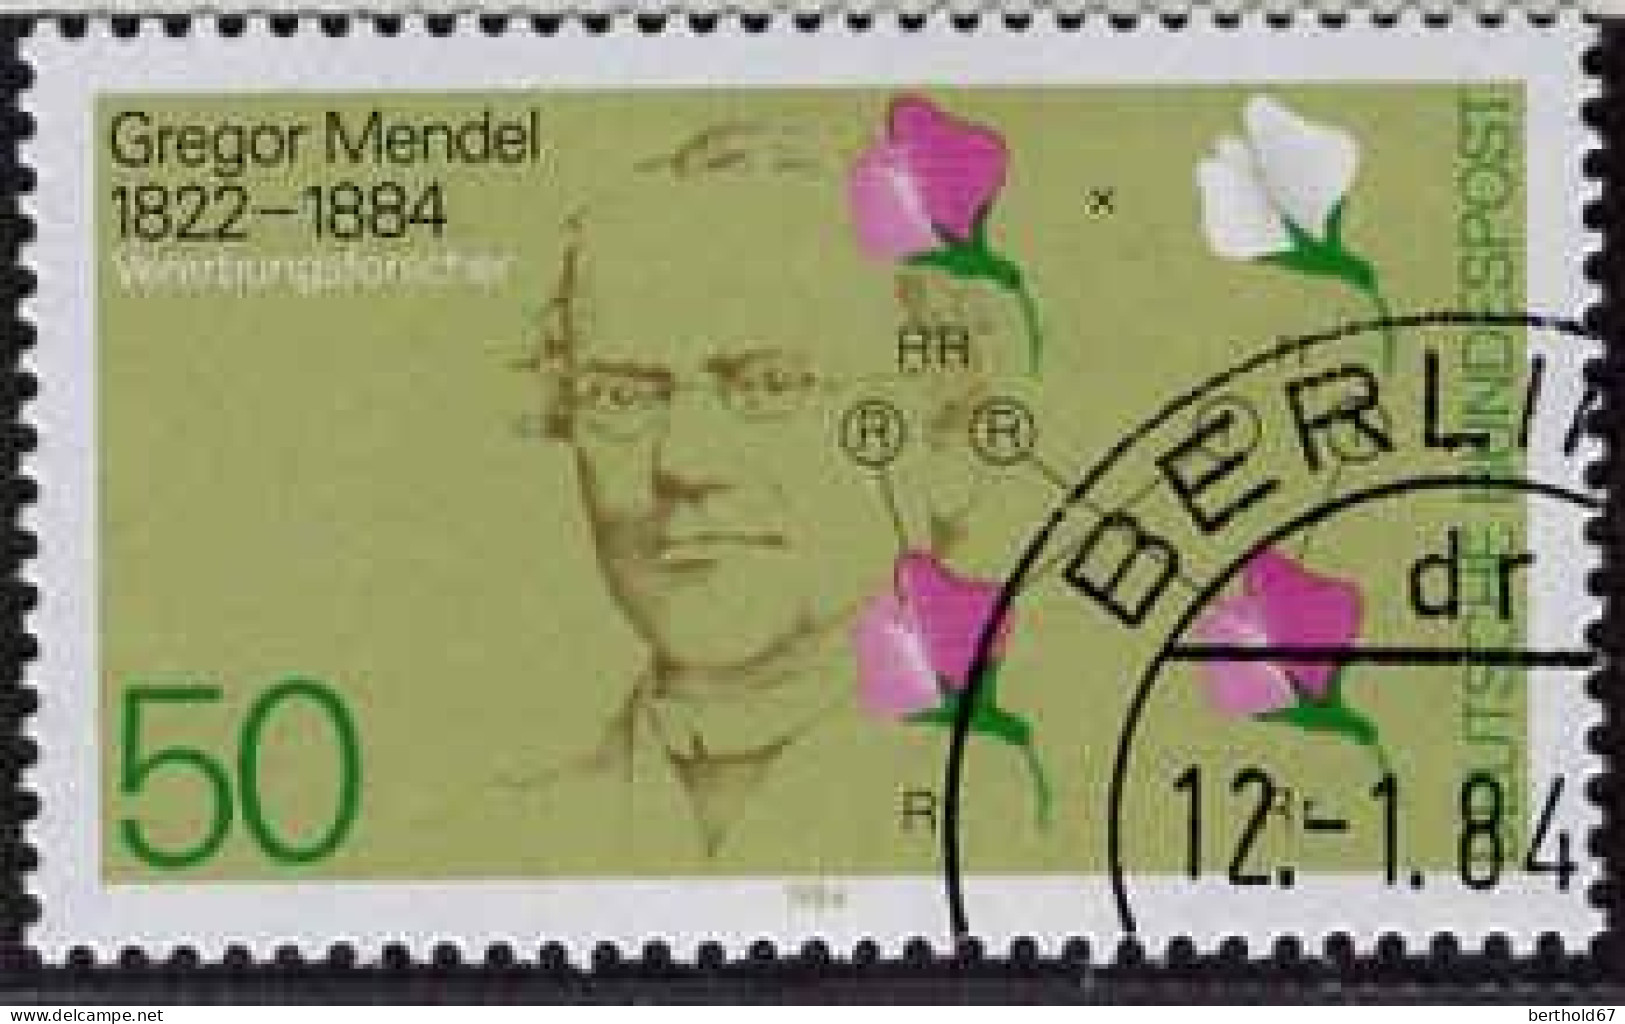 RFA Poste Obl Yv:1031 Mi:1199 Gregor Mendel Généticien (TB Cachet Rond) Berlin 12-1-84 (Thème) - Medicine